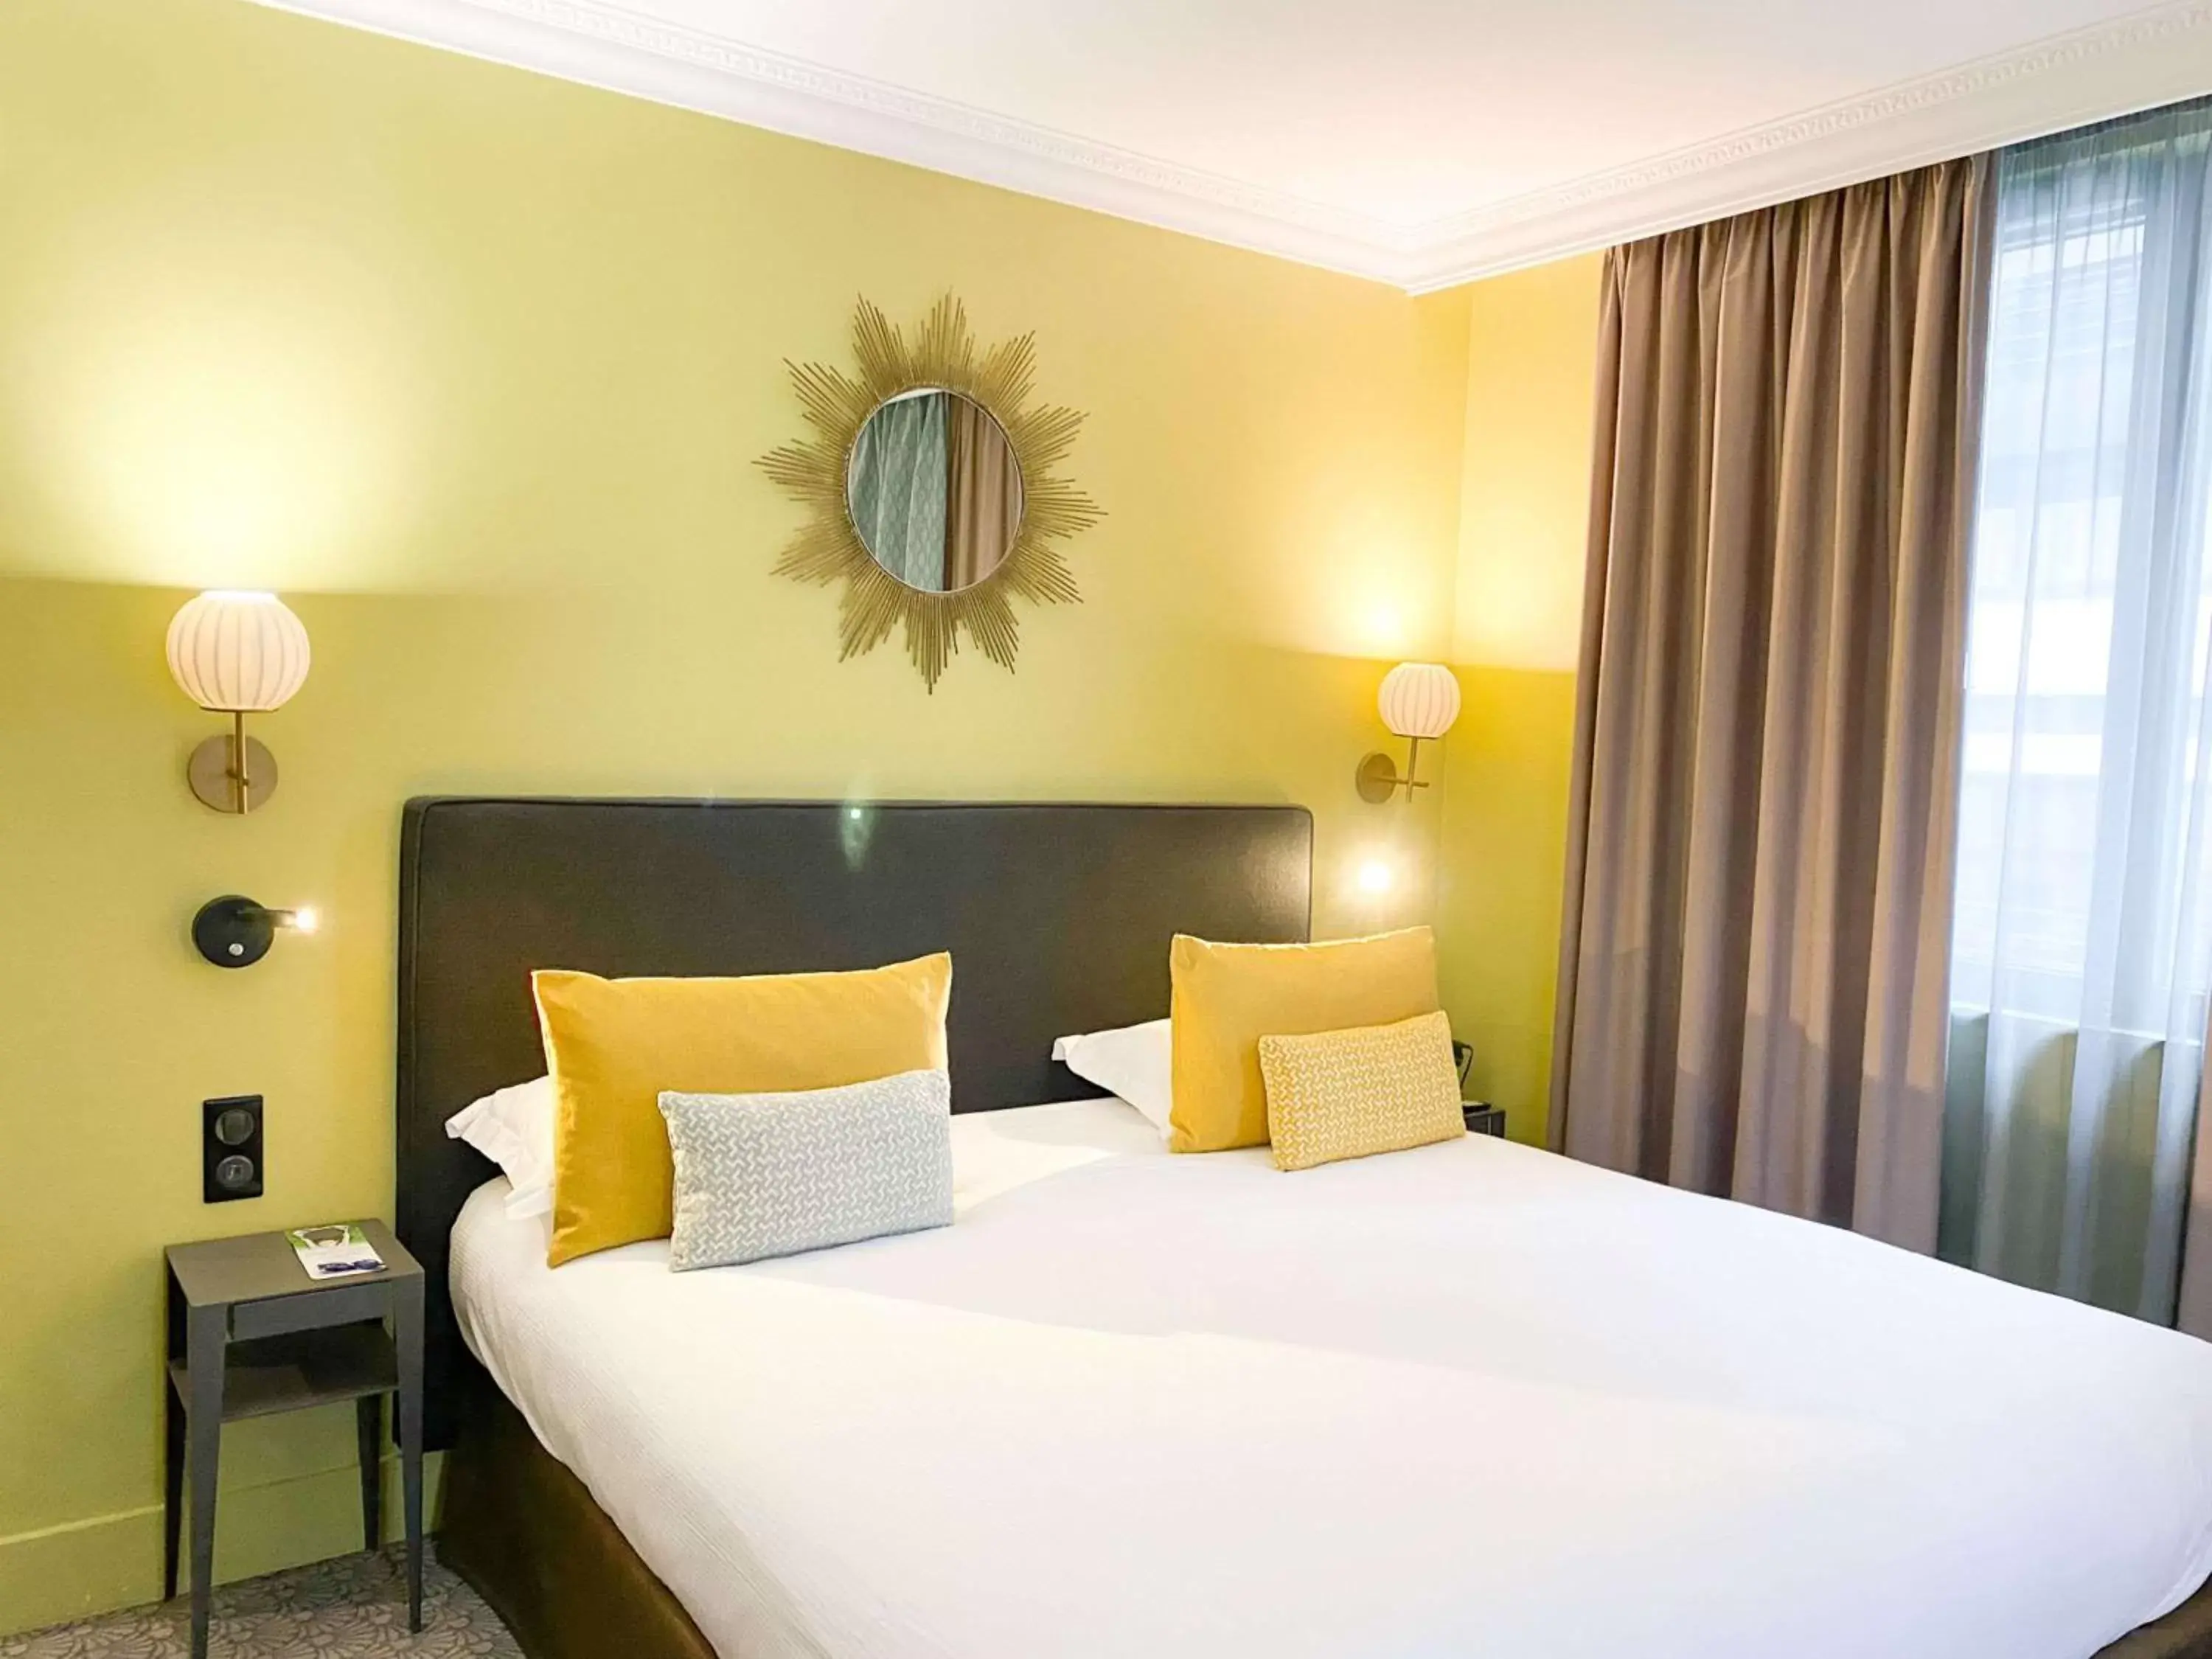 Bedroom, Bed in Best Western Plus Hotel de Dieppe 1880